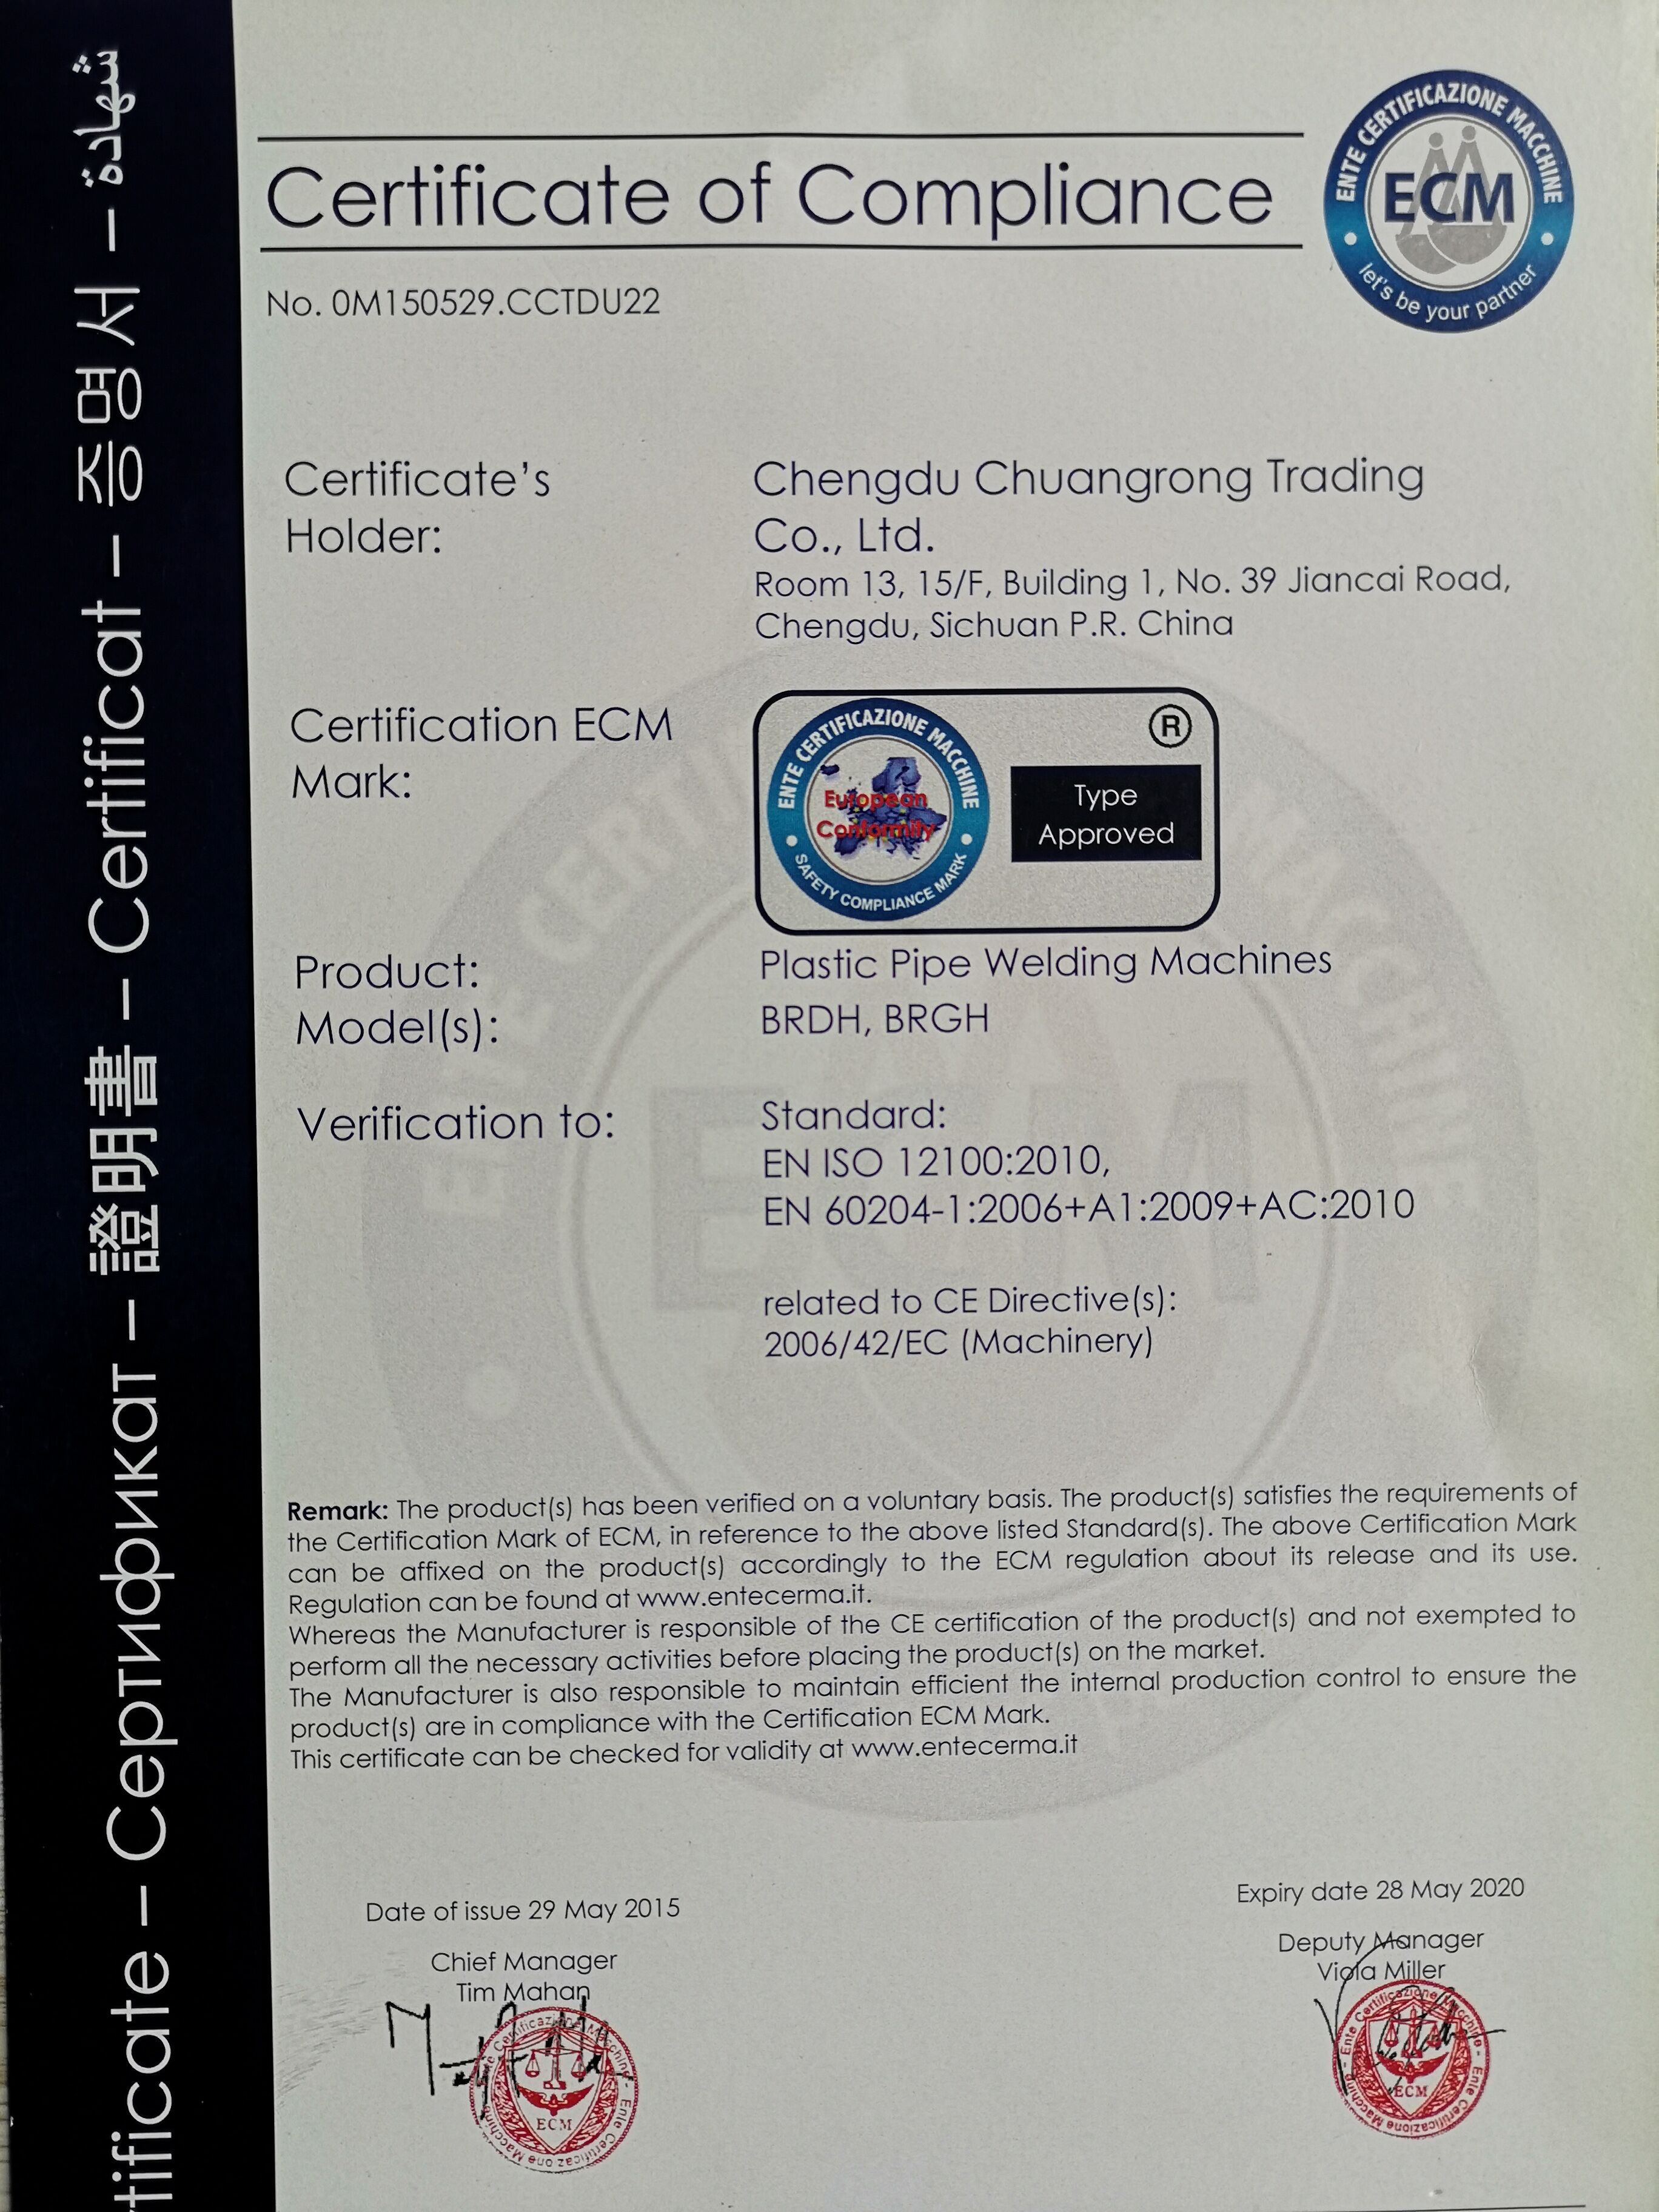 焊机CE证书